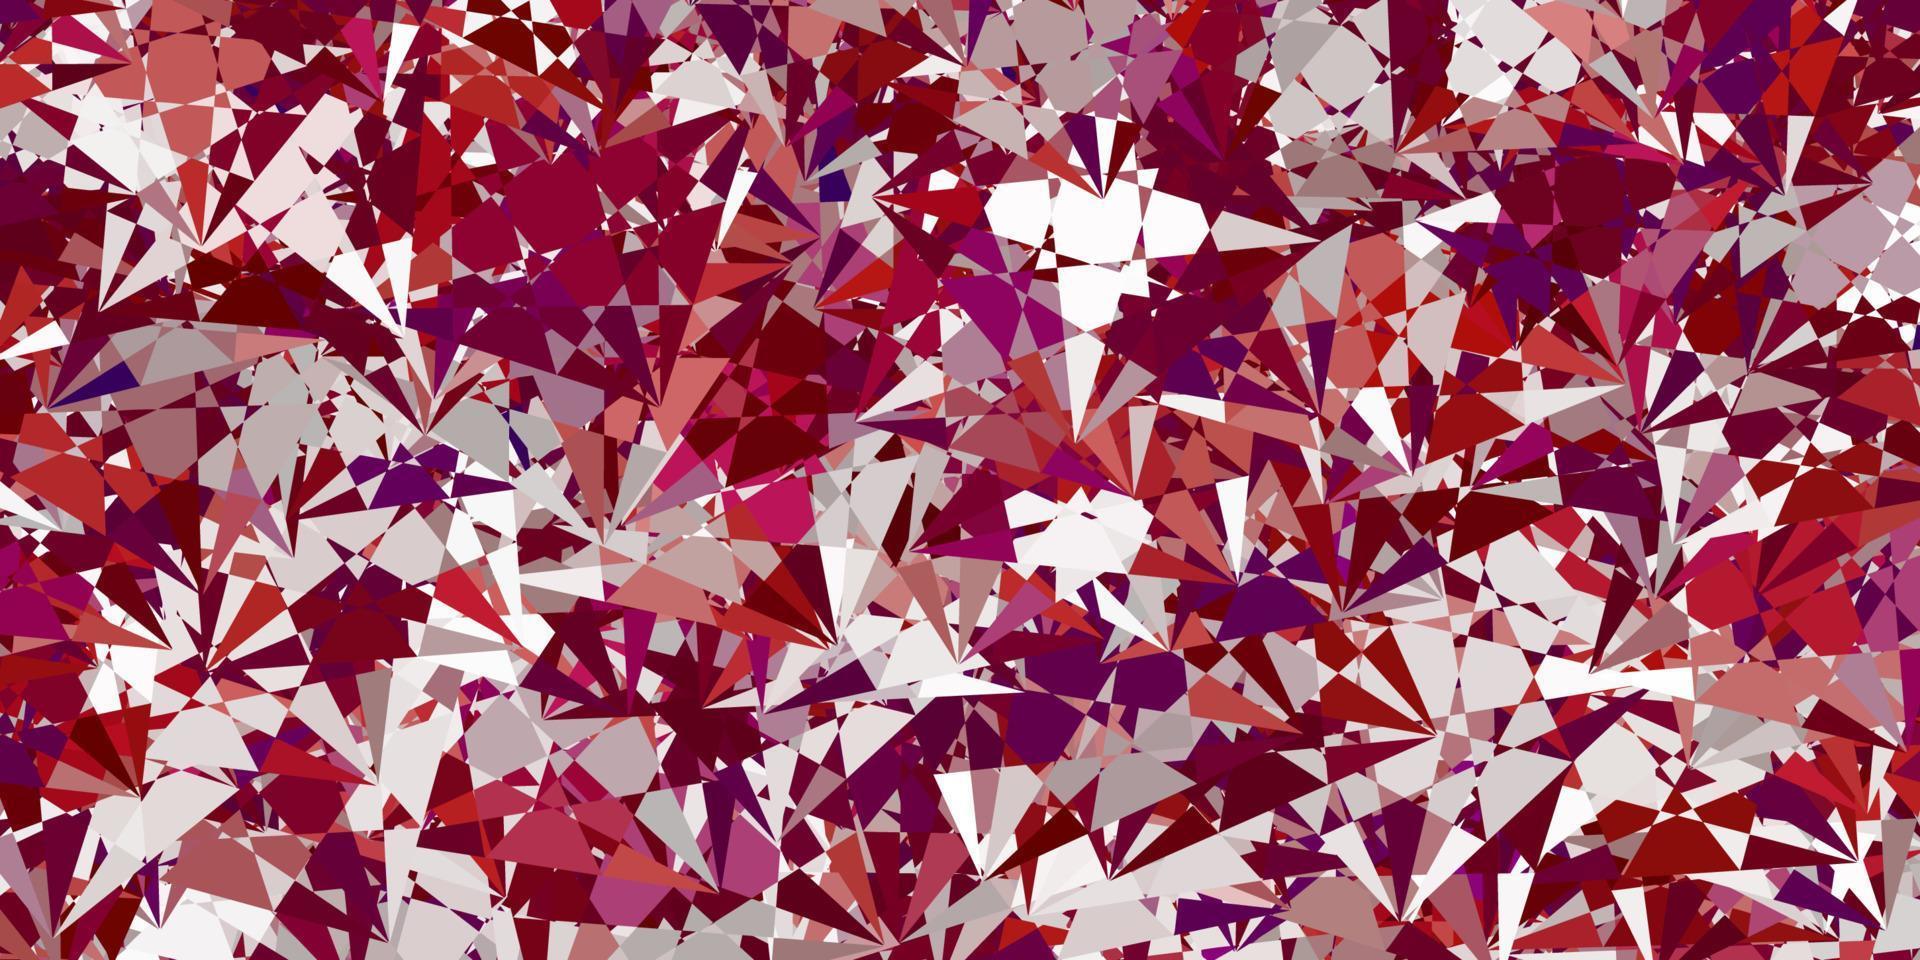 textura vector roxo claro com triângulos aleatórios.